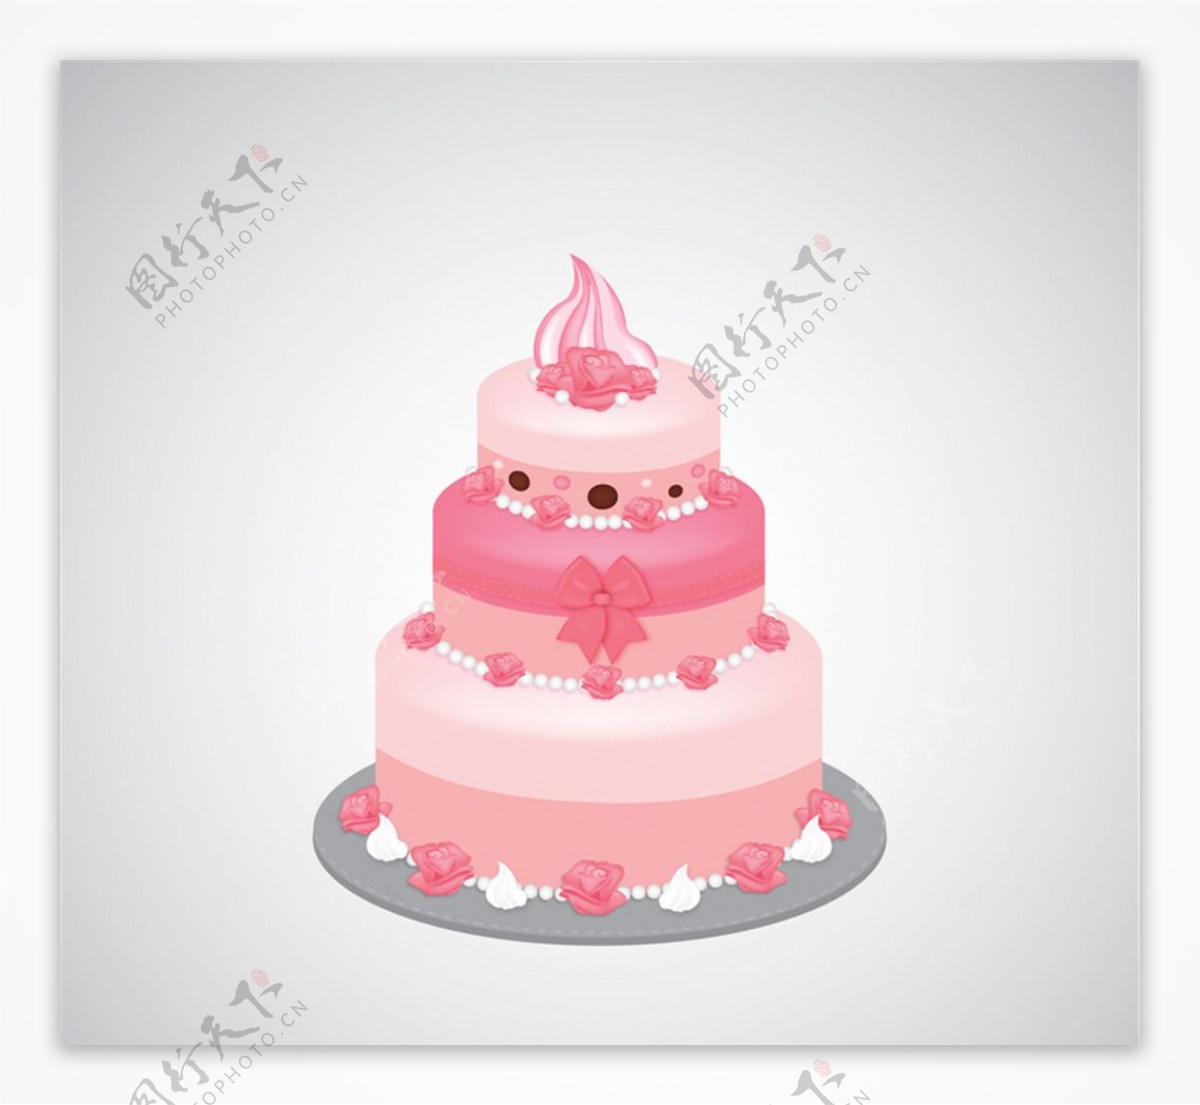 粉色三层蛋糕设计矢量素材